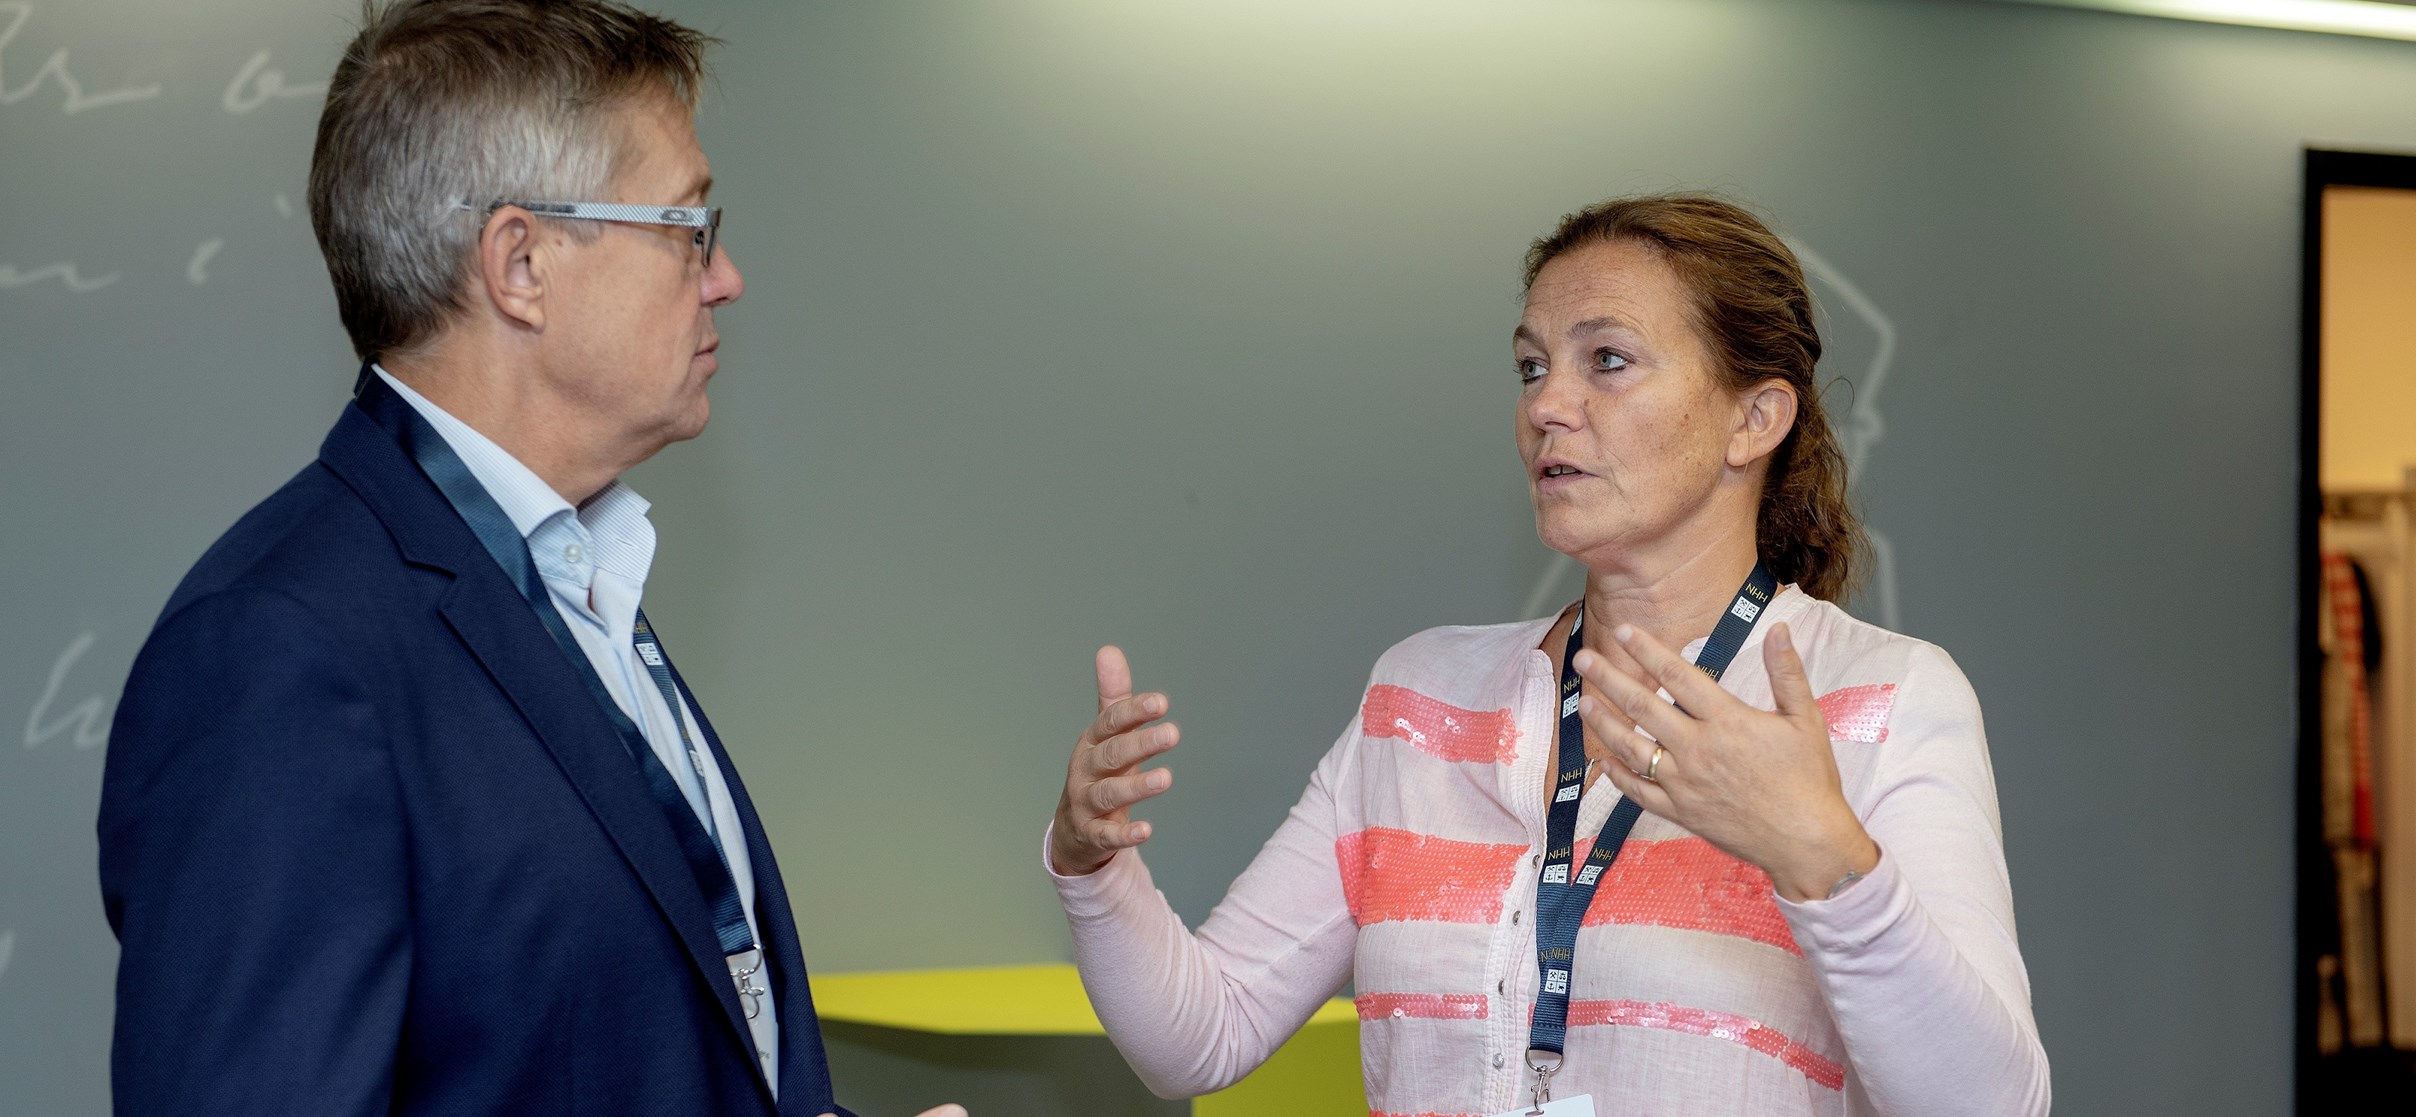 Administrerende direktør Karl-Christian Agerup i Oslotech AS og konsernsjef Alexandra Bech Gjørv fra Sintef.